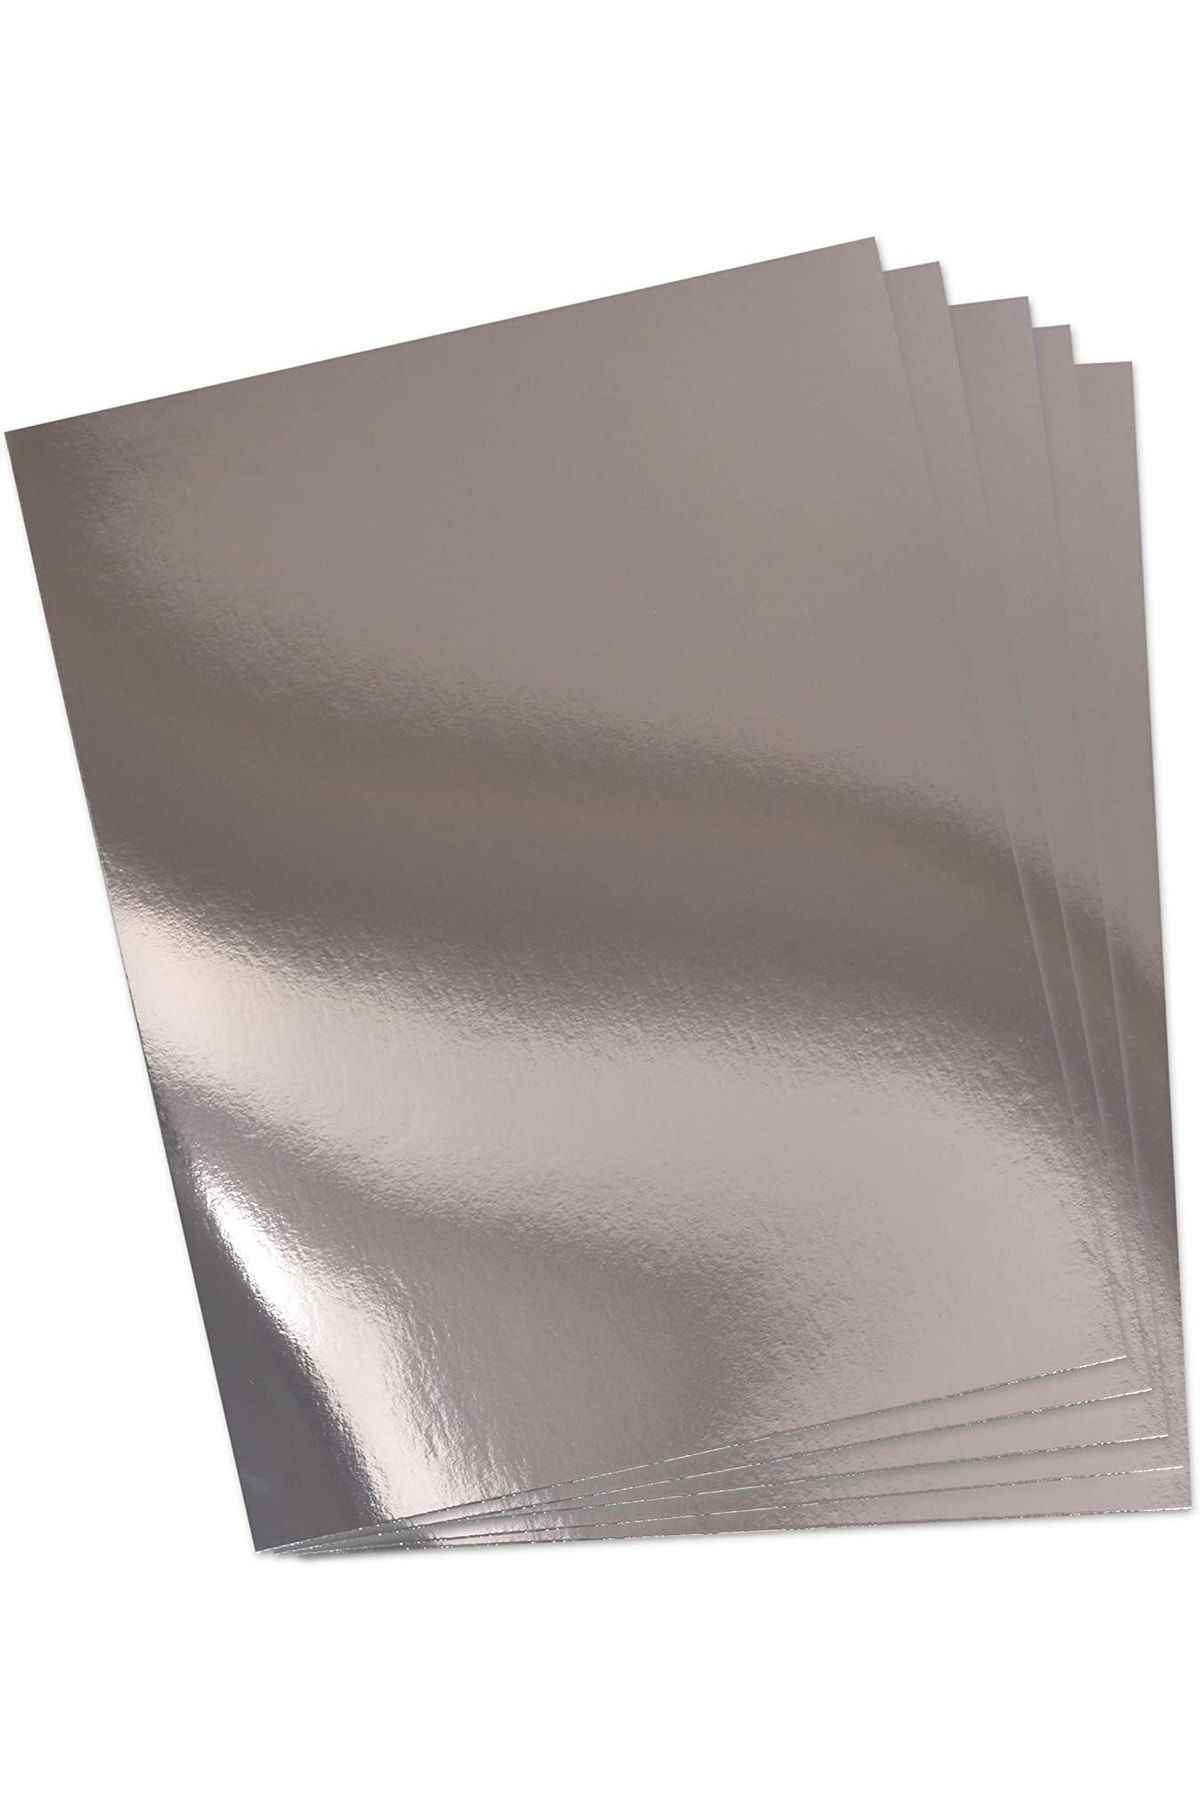 roco paper Metalik Fon Kartonu - Aynalı Fon Kartonu - 200 Gr. 50*70 Cm - Gümüş